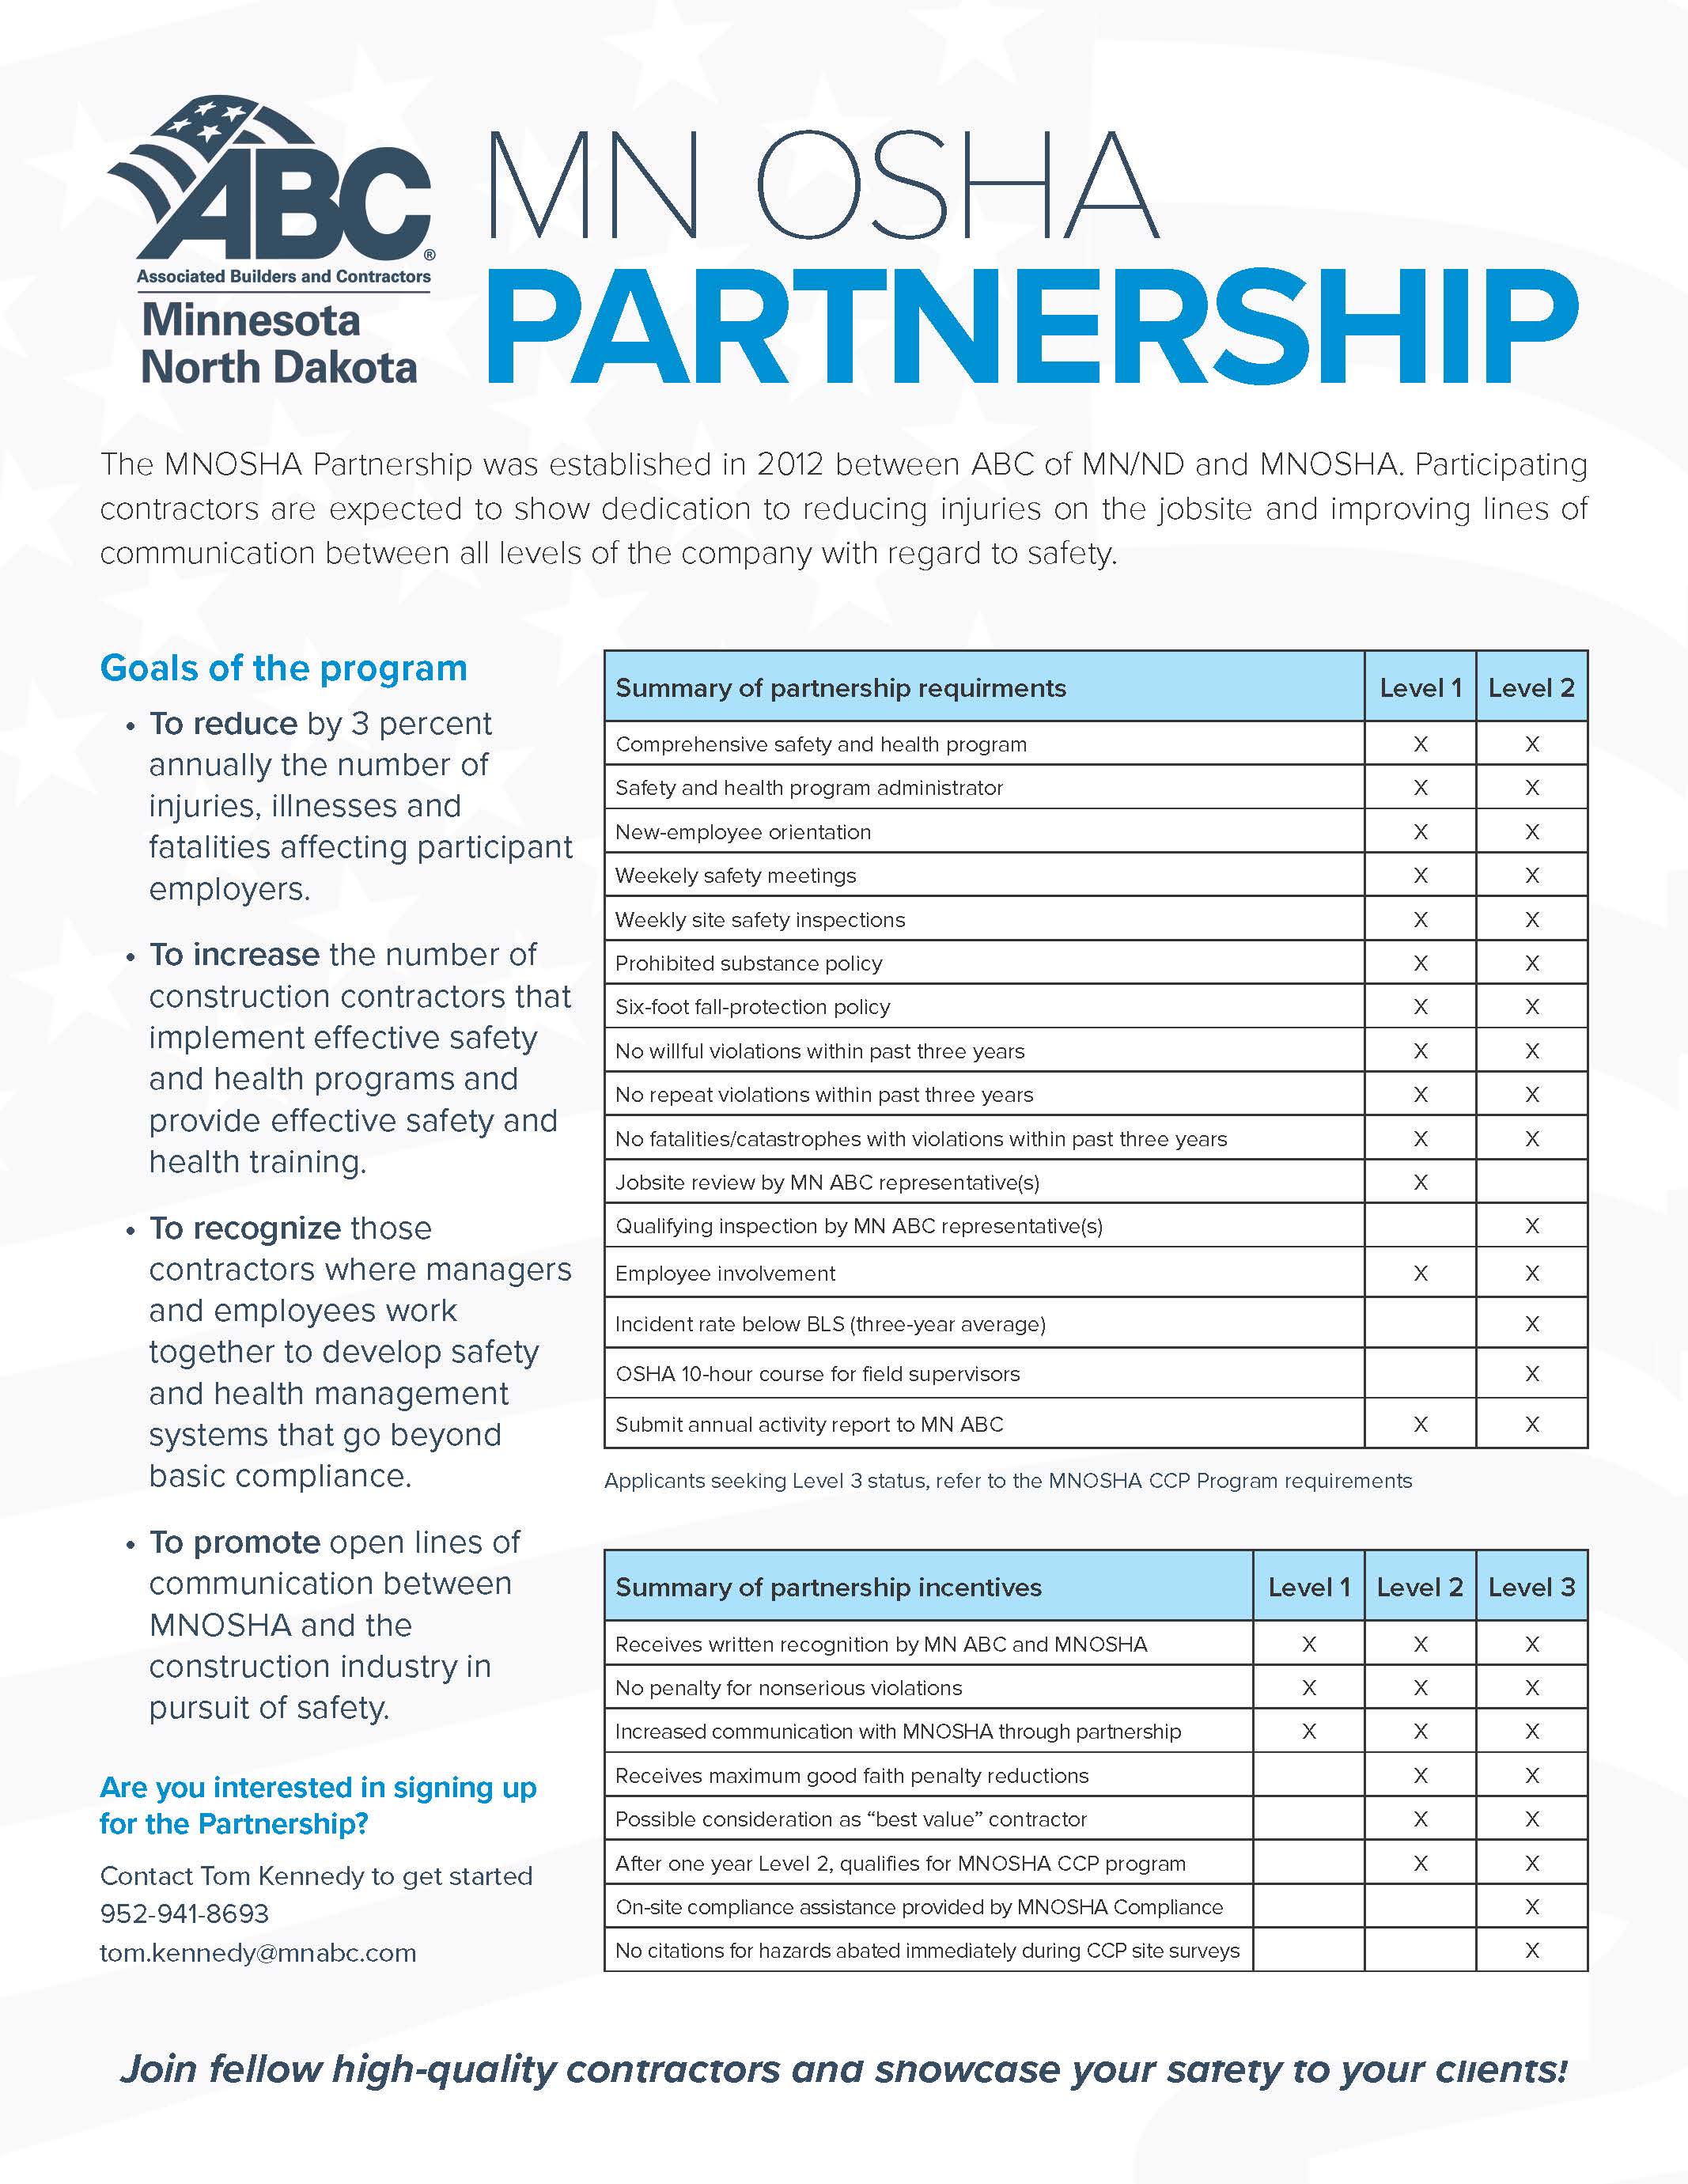 MNOSHA Partnership Flyer